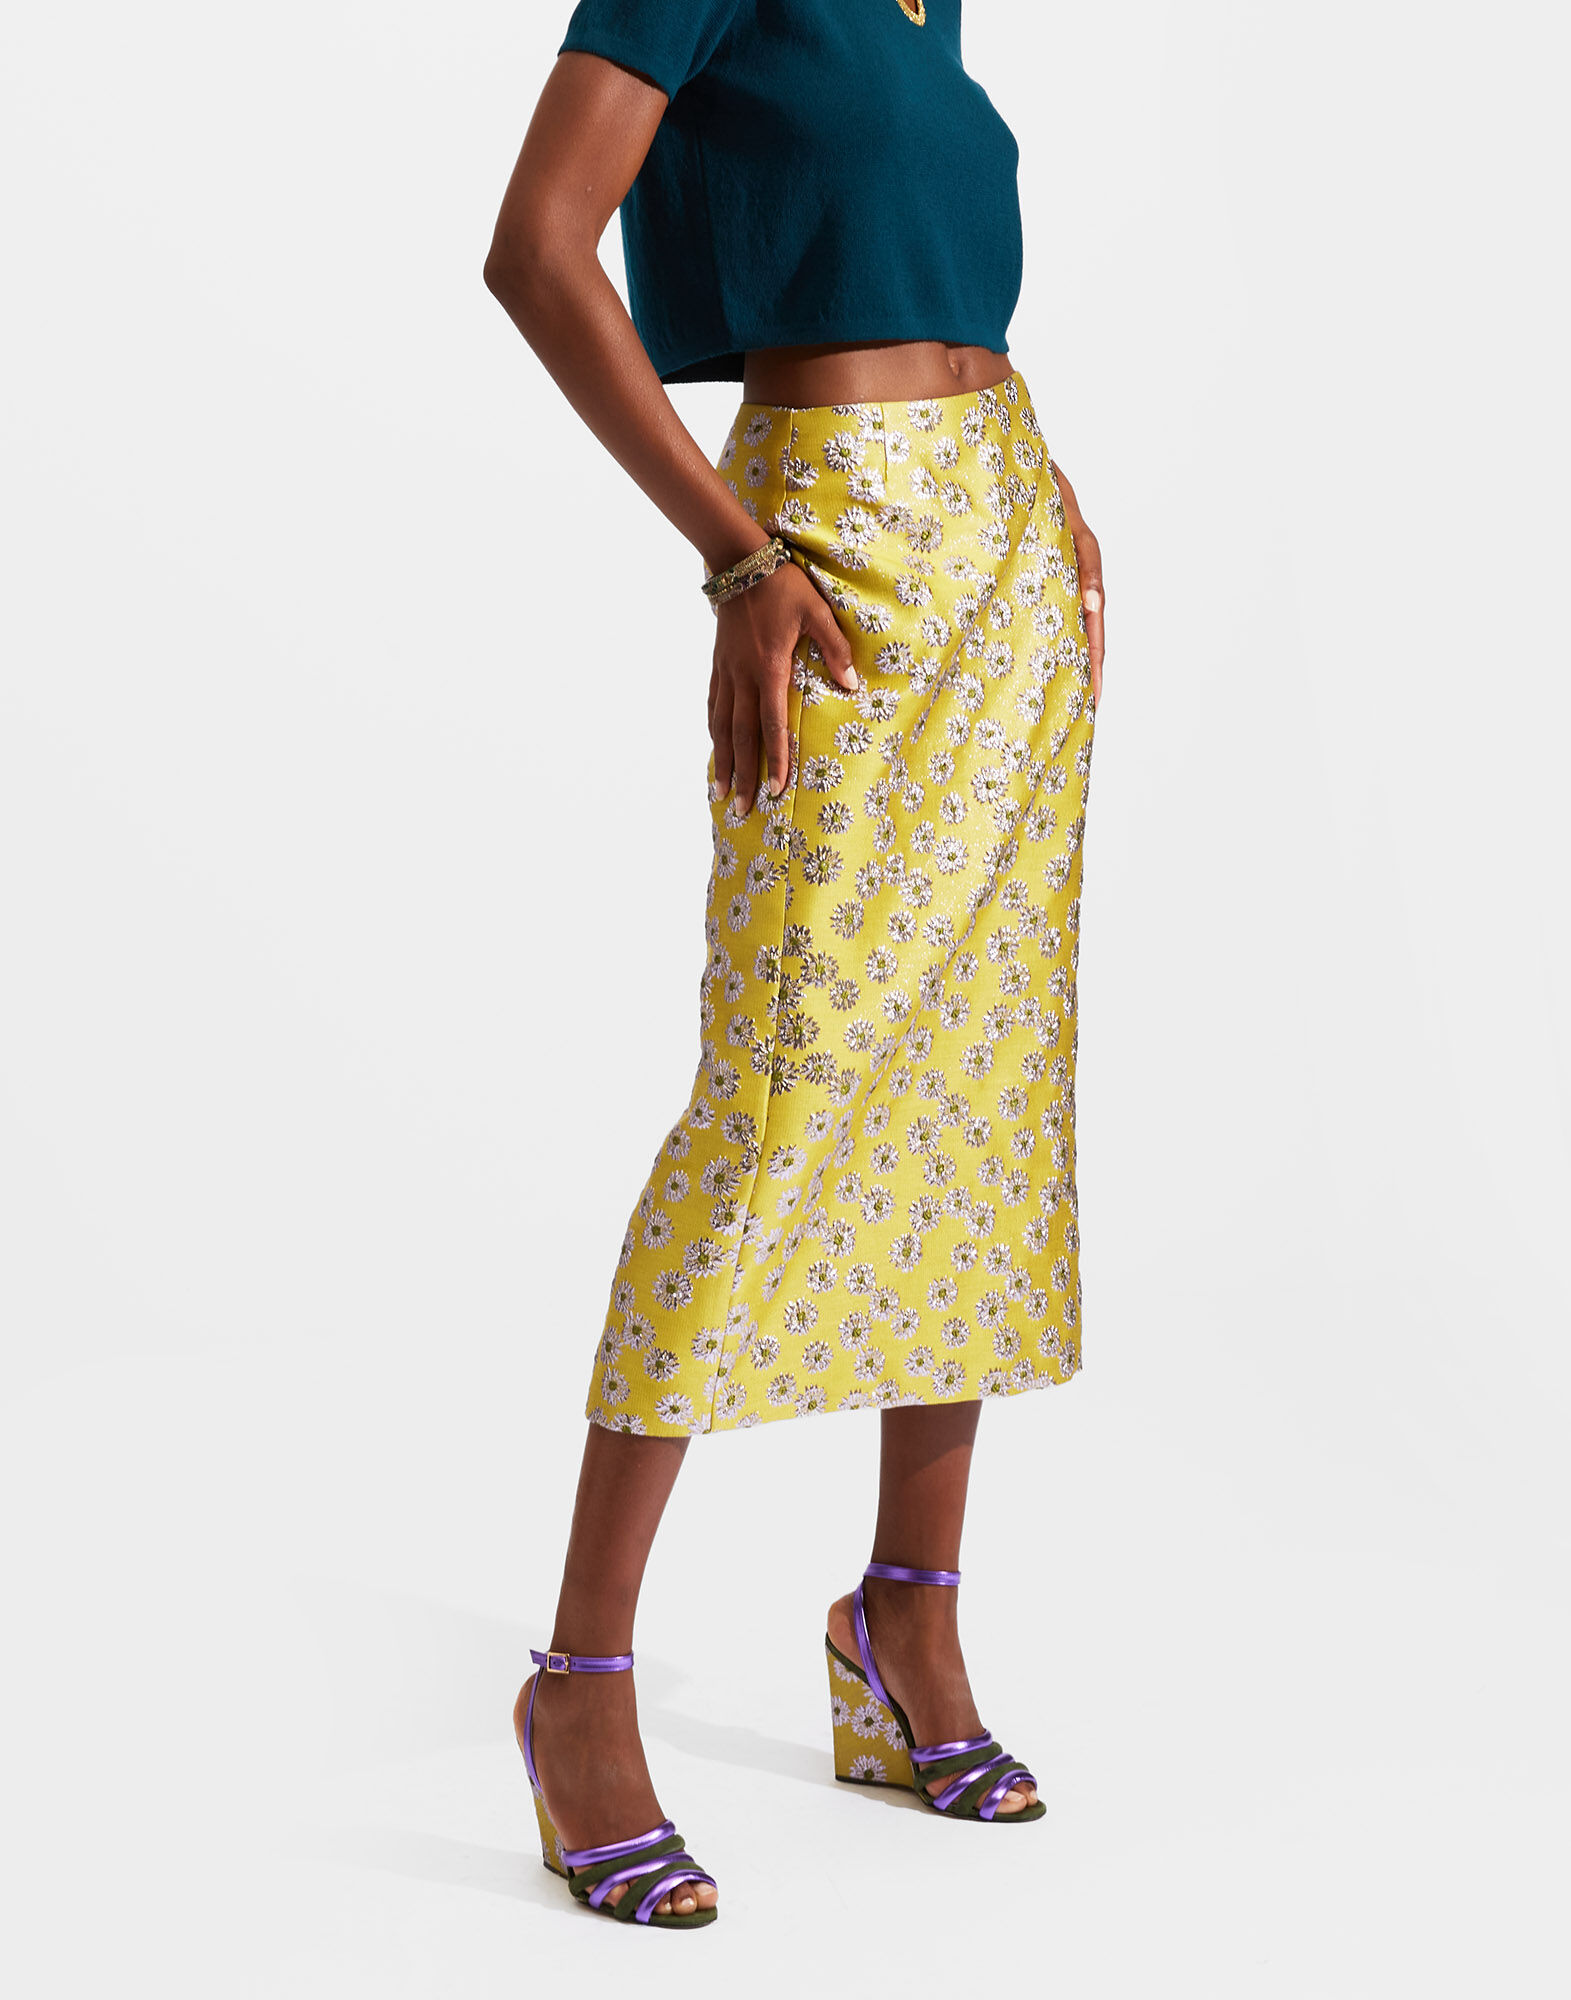 Pencil Skirt in Margarita for Women | La DoubleJ US